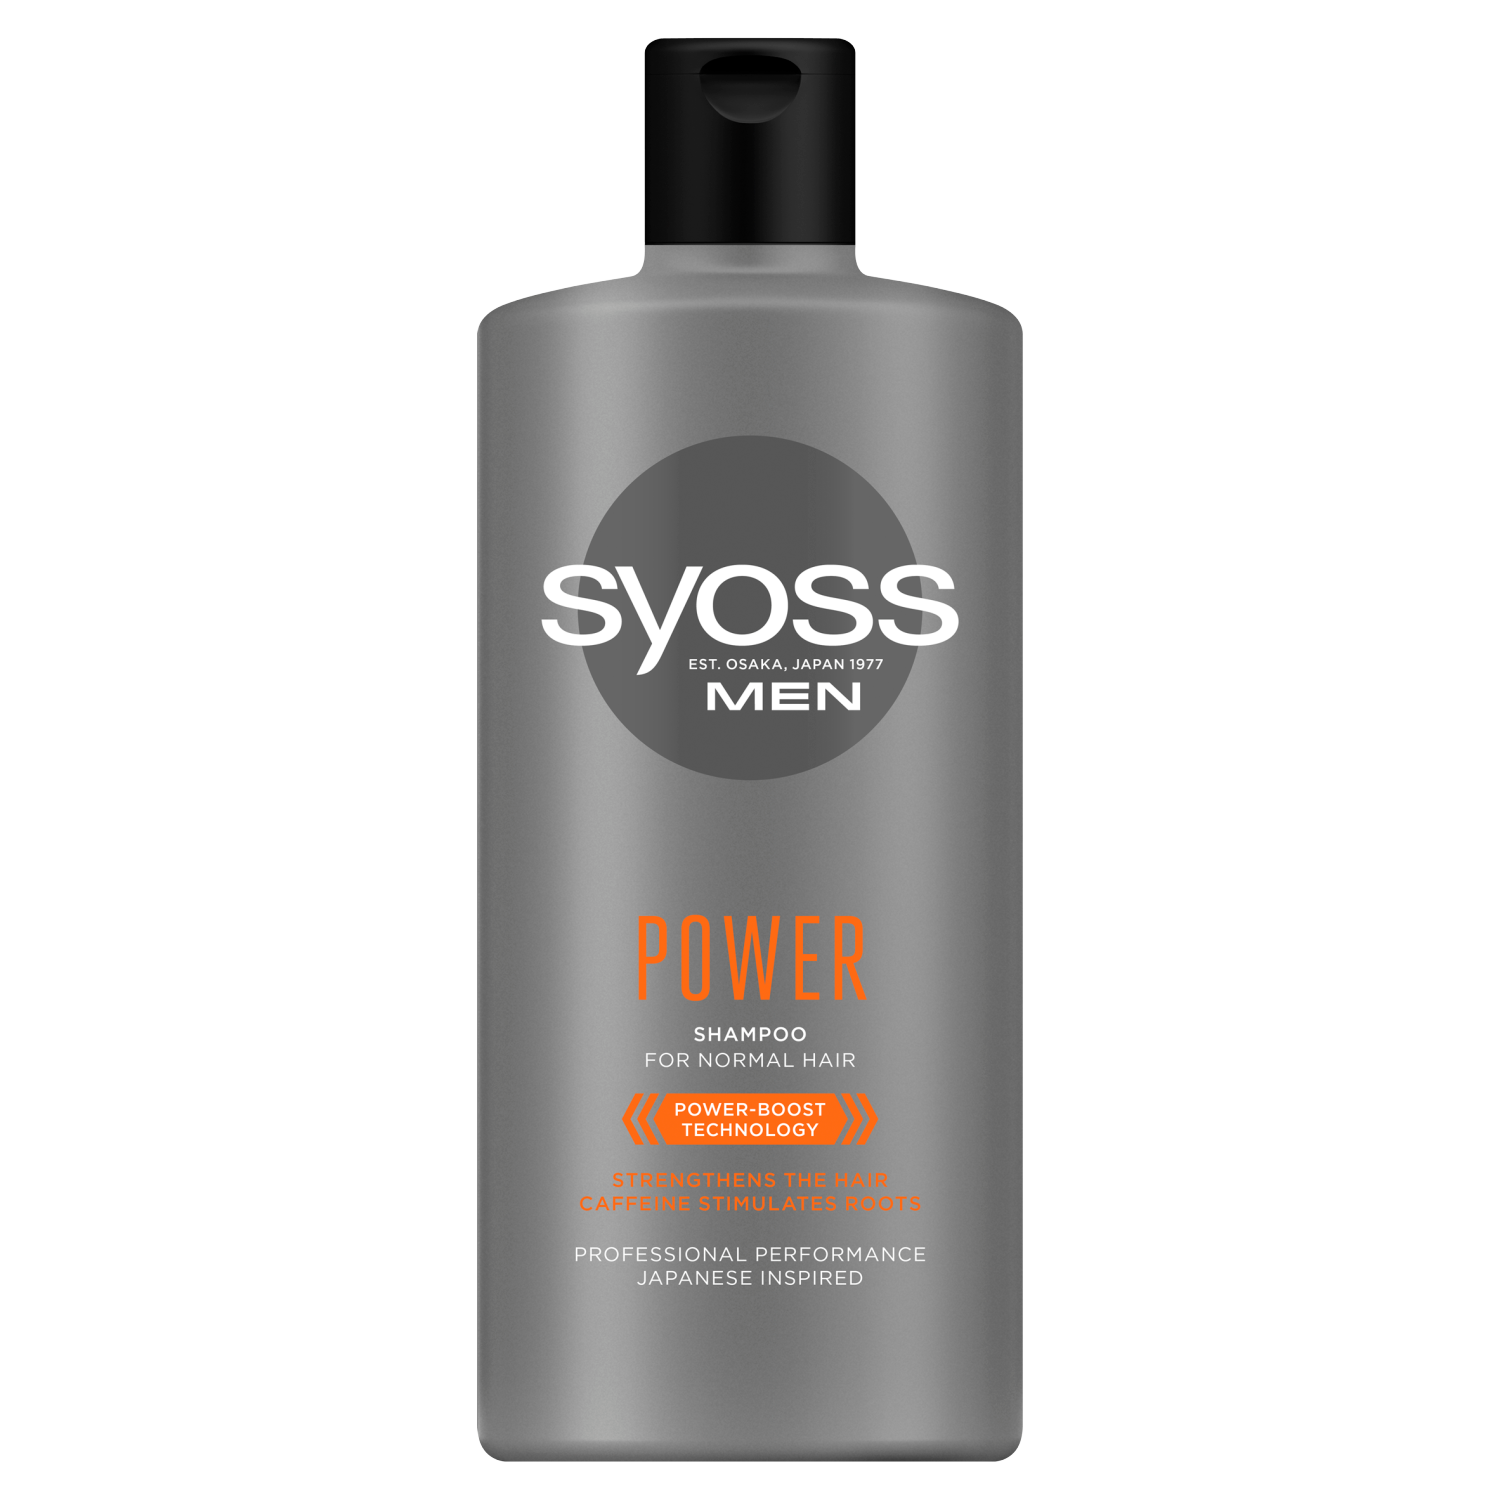 Syoss Men Power шампунь для нормальных мужских волос, 440 мл syoss men шампунь power для нормальных волос 450 мл